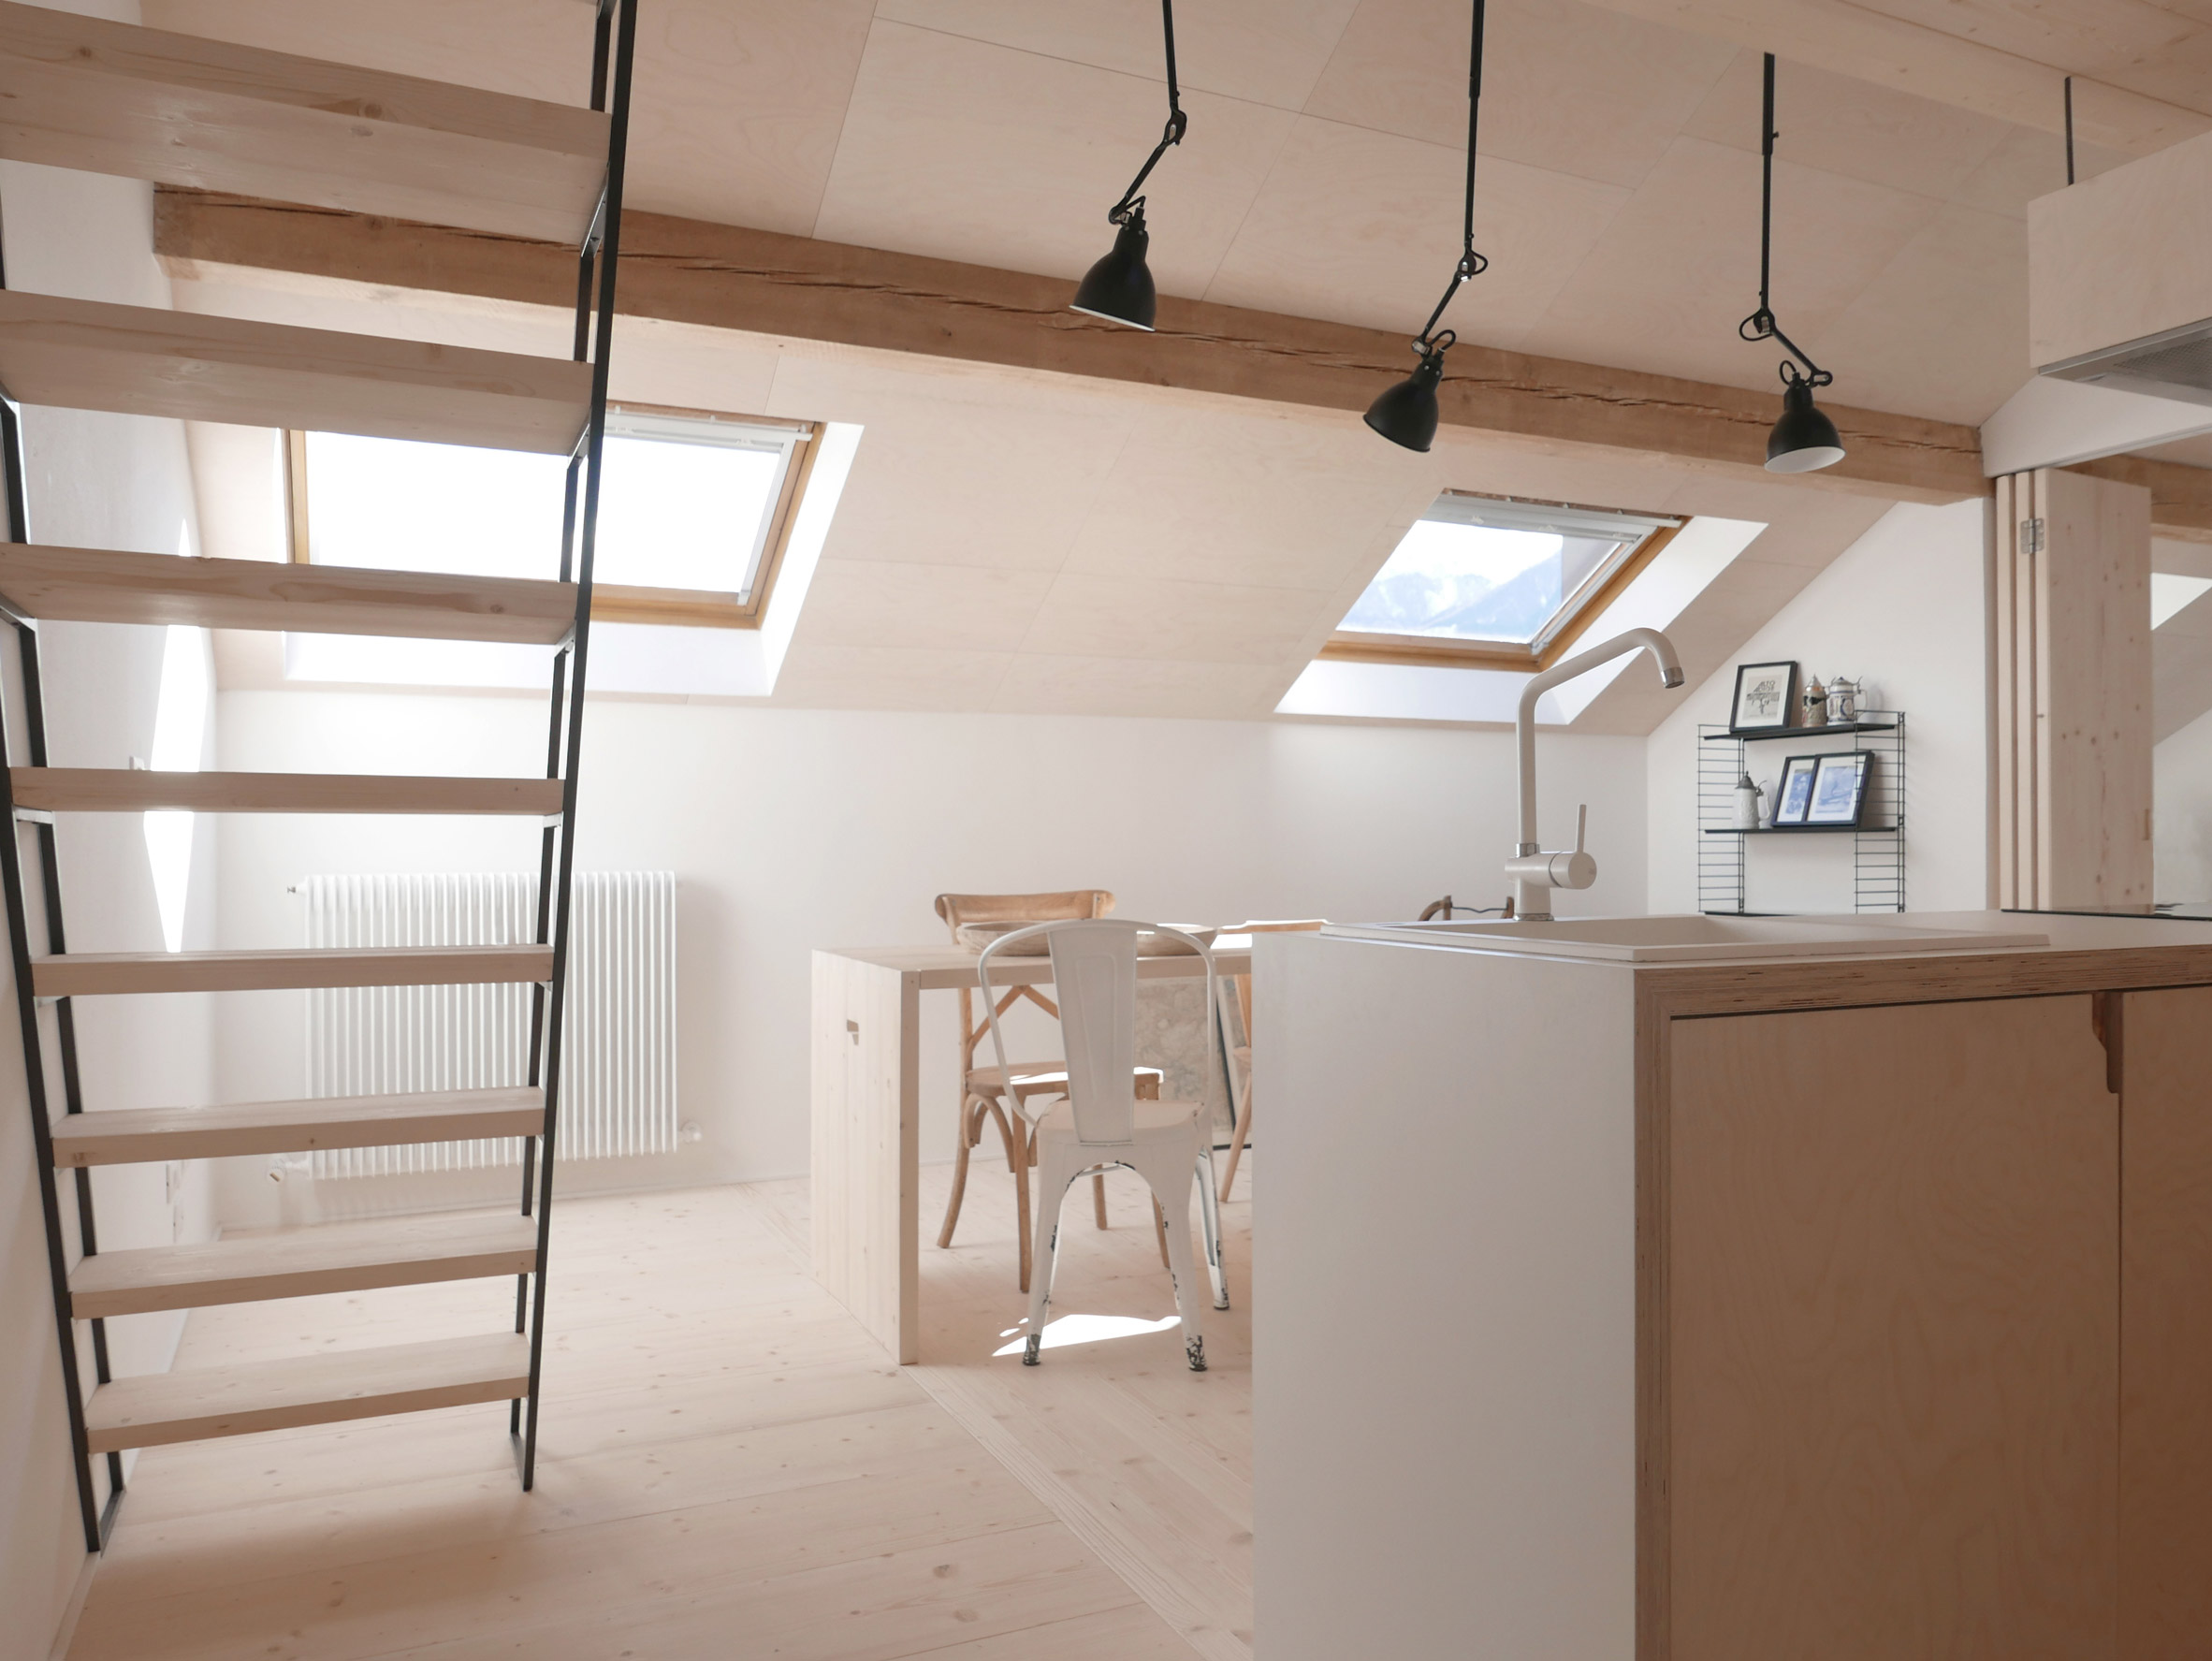 Jab Studio Creates Rustic Interior Design for Loft Apartment